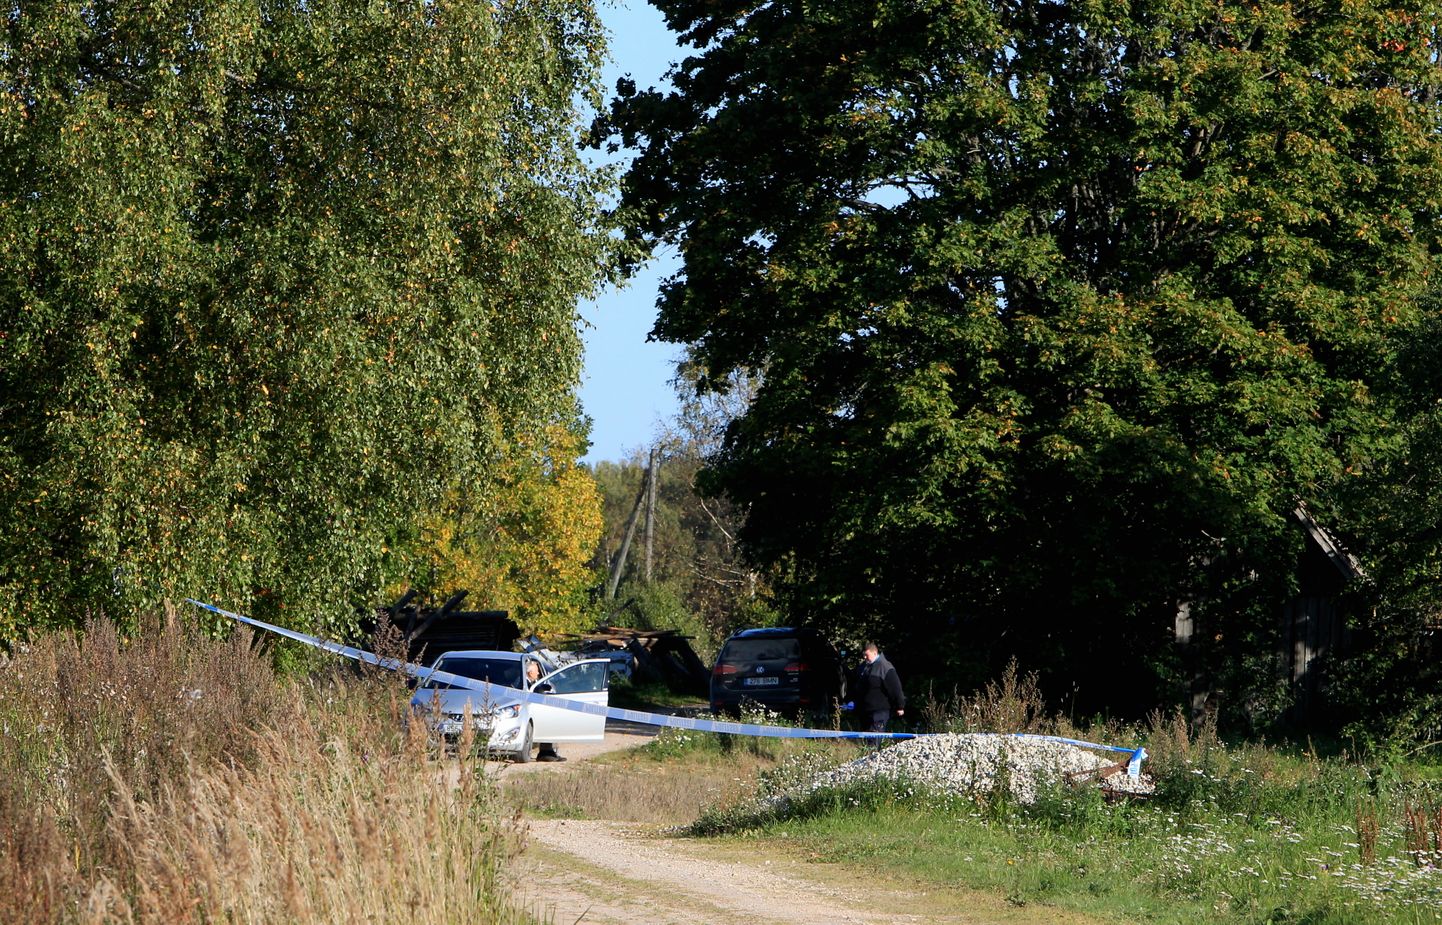 Politsei pidas 27. septembril Nõo ja Kambja valla piiril asuva talu õuel kuriteos kahtlustatavana kinni kaks meest. Neist üks, Jaak Hütter juunior, võttis endalt järgmisel hommikul arestikambris elu.